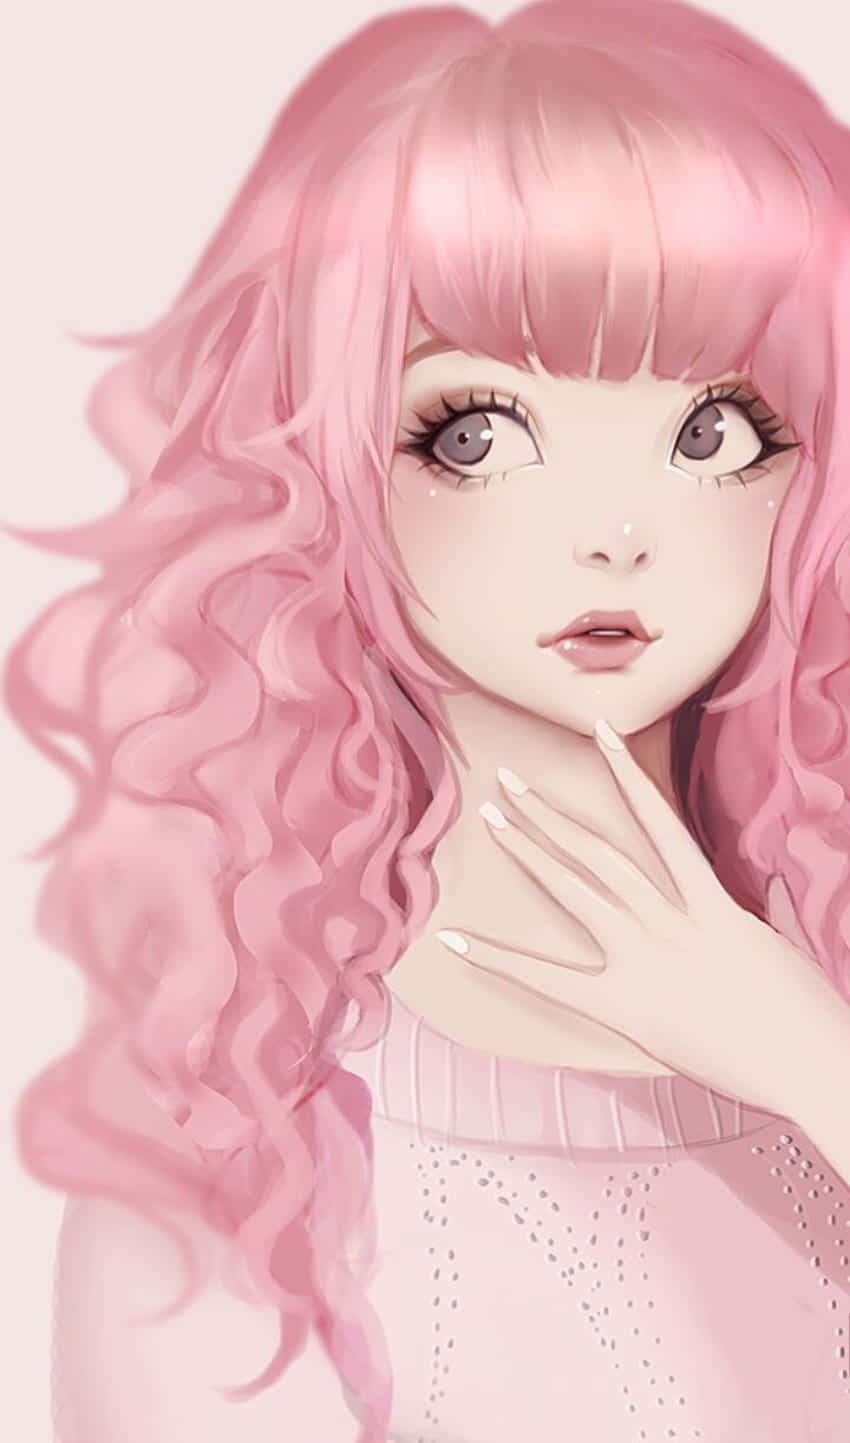 Розовая нарисованная девочка. Девушка с розовыми волосами арт. Анимешка с розовыми волосами.